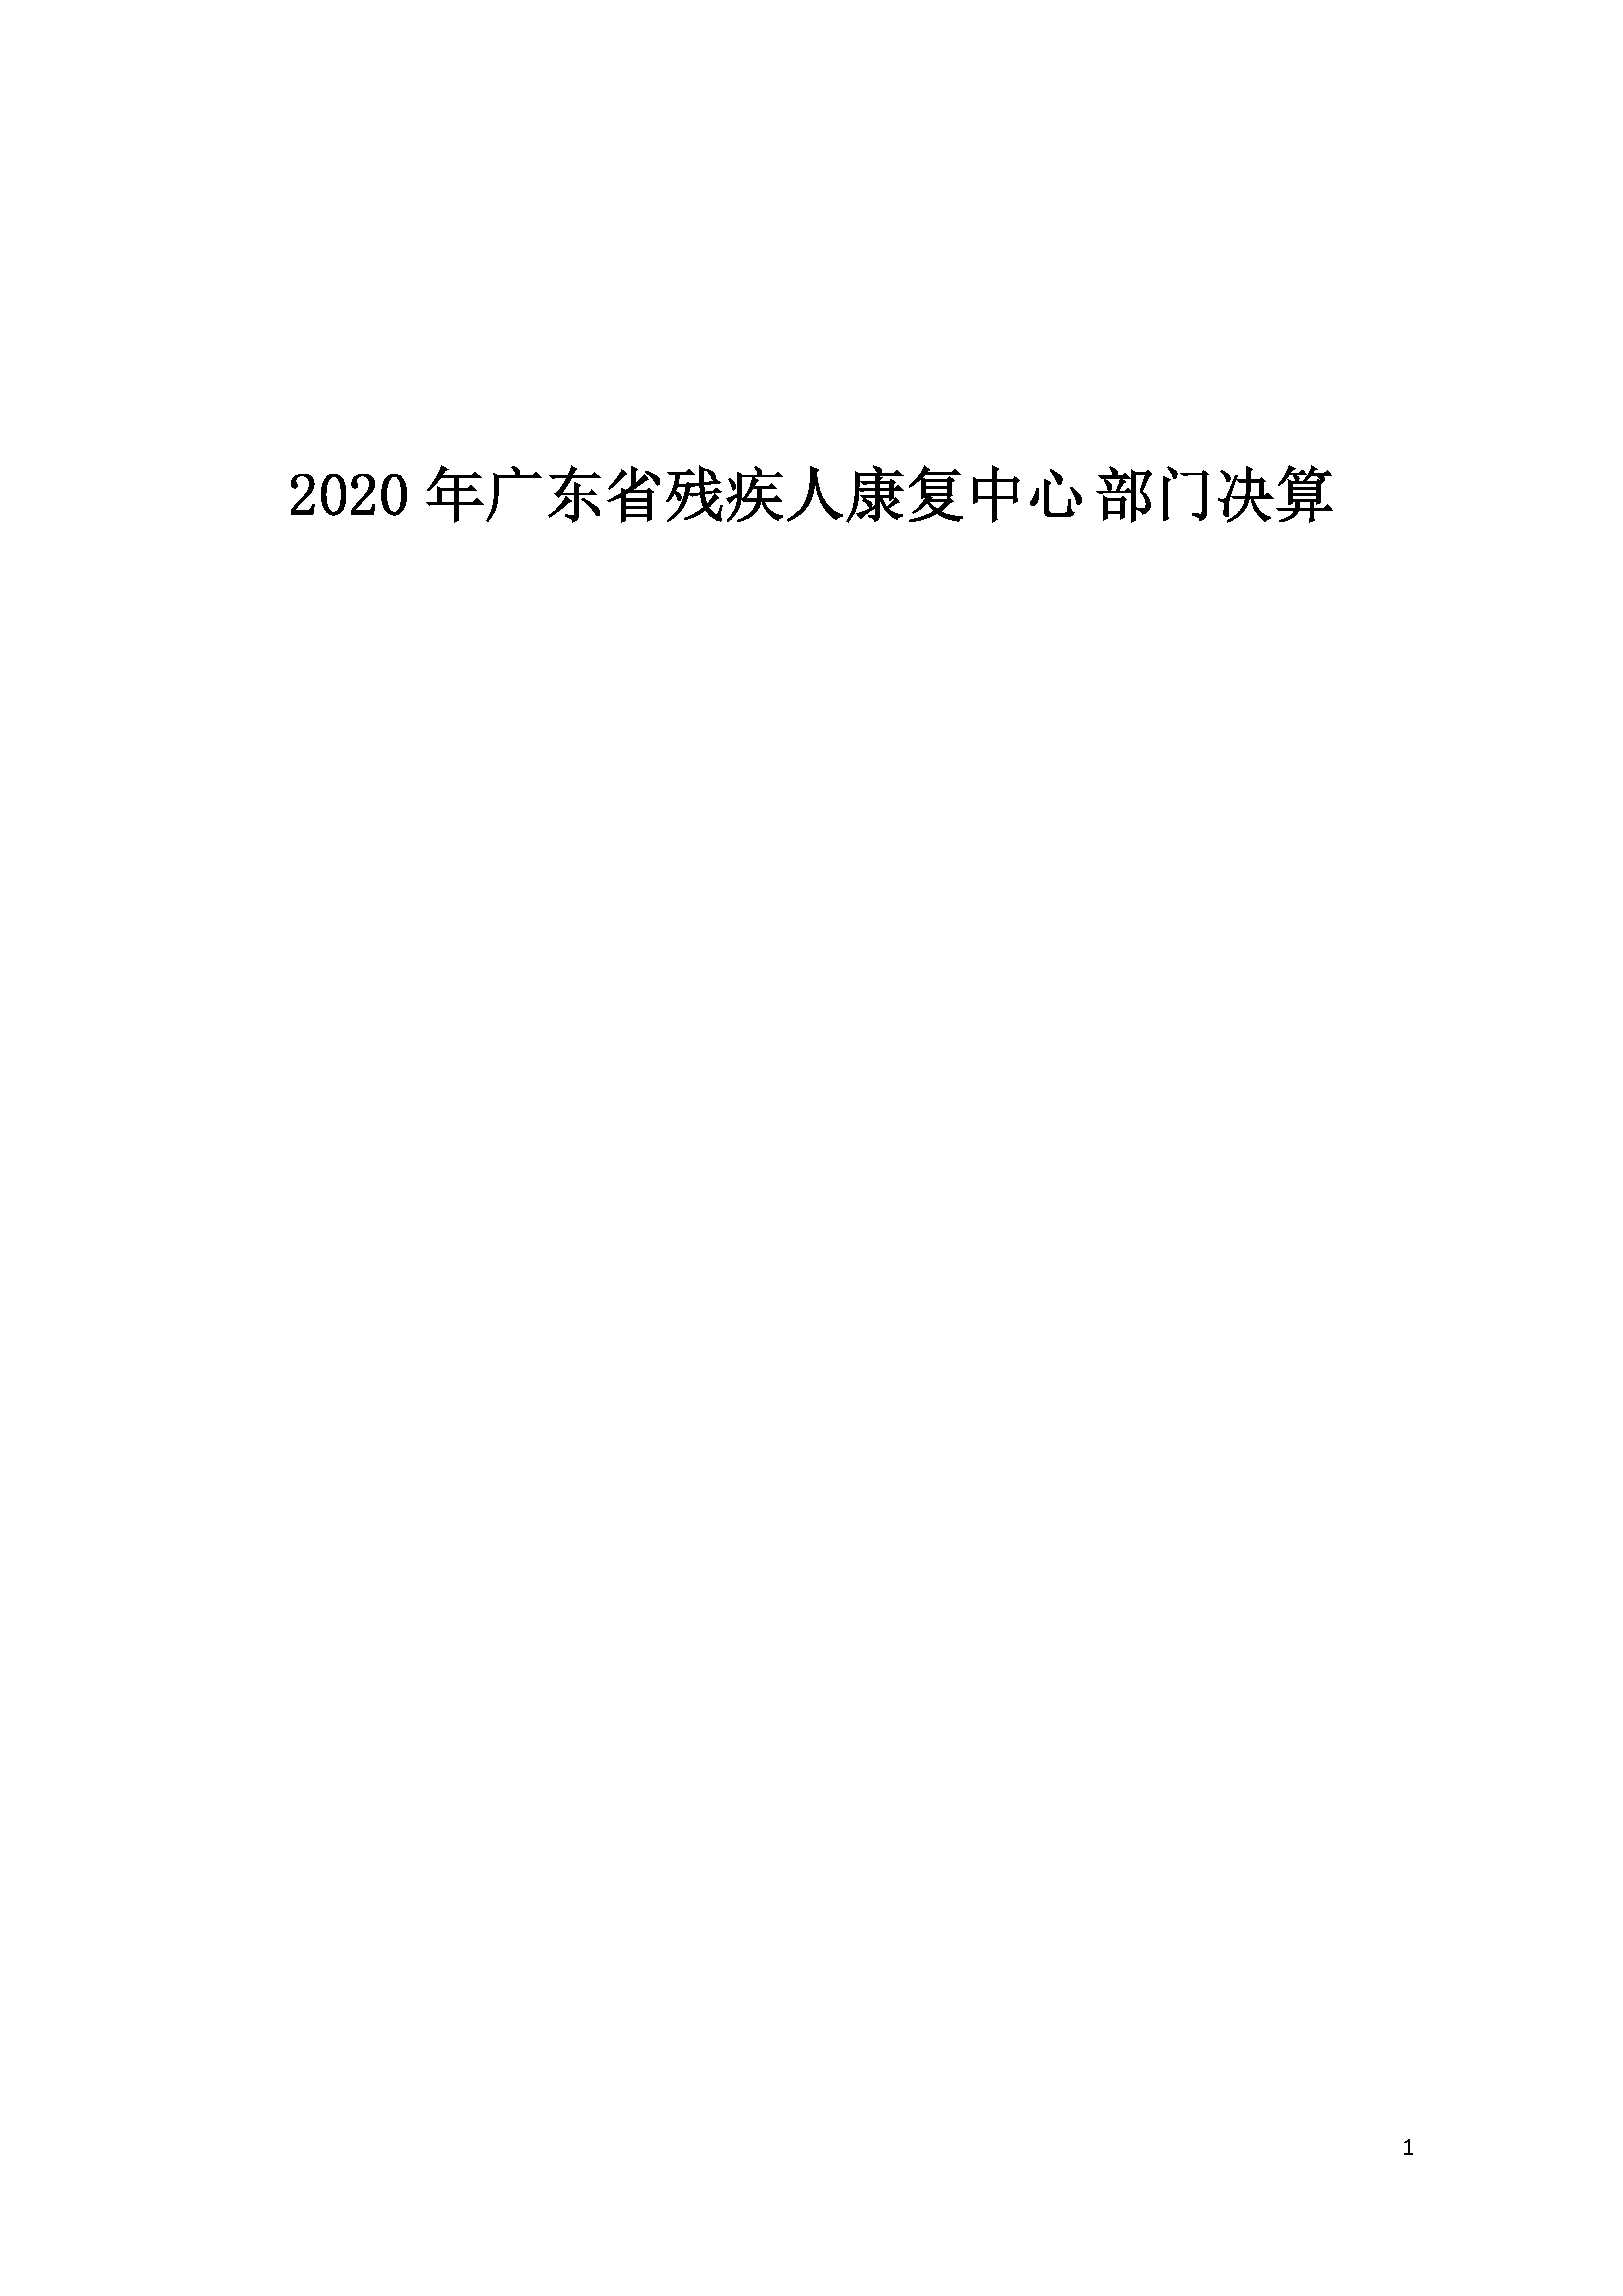 2020年广东省残疾人康复中心部门决算_页面_01.jpg